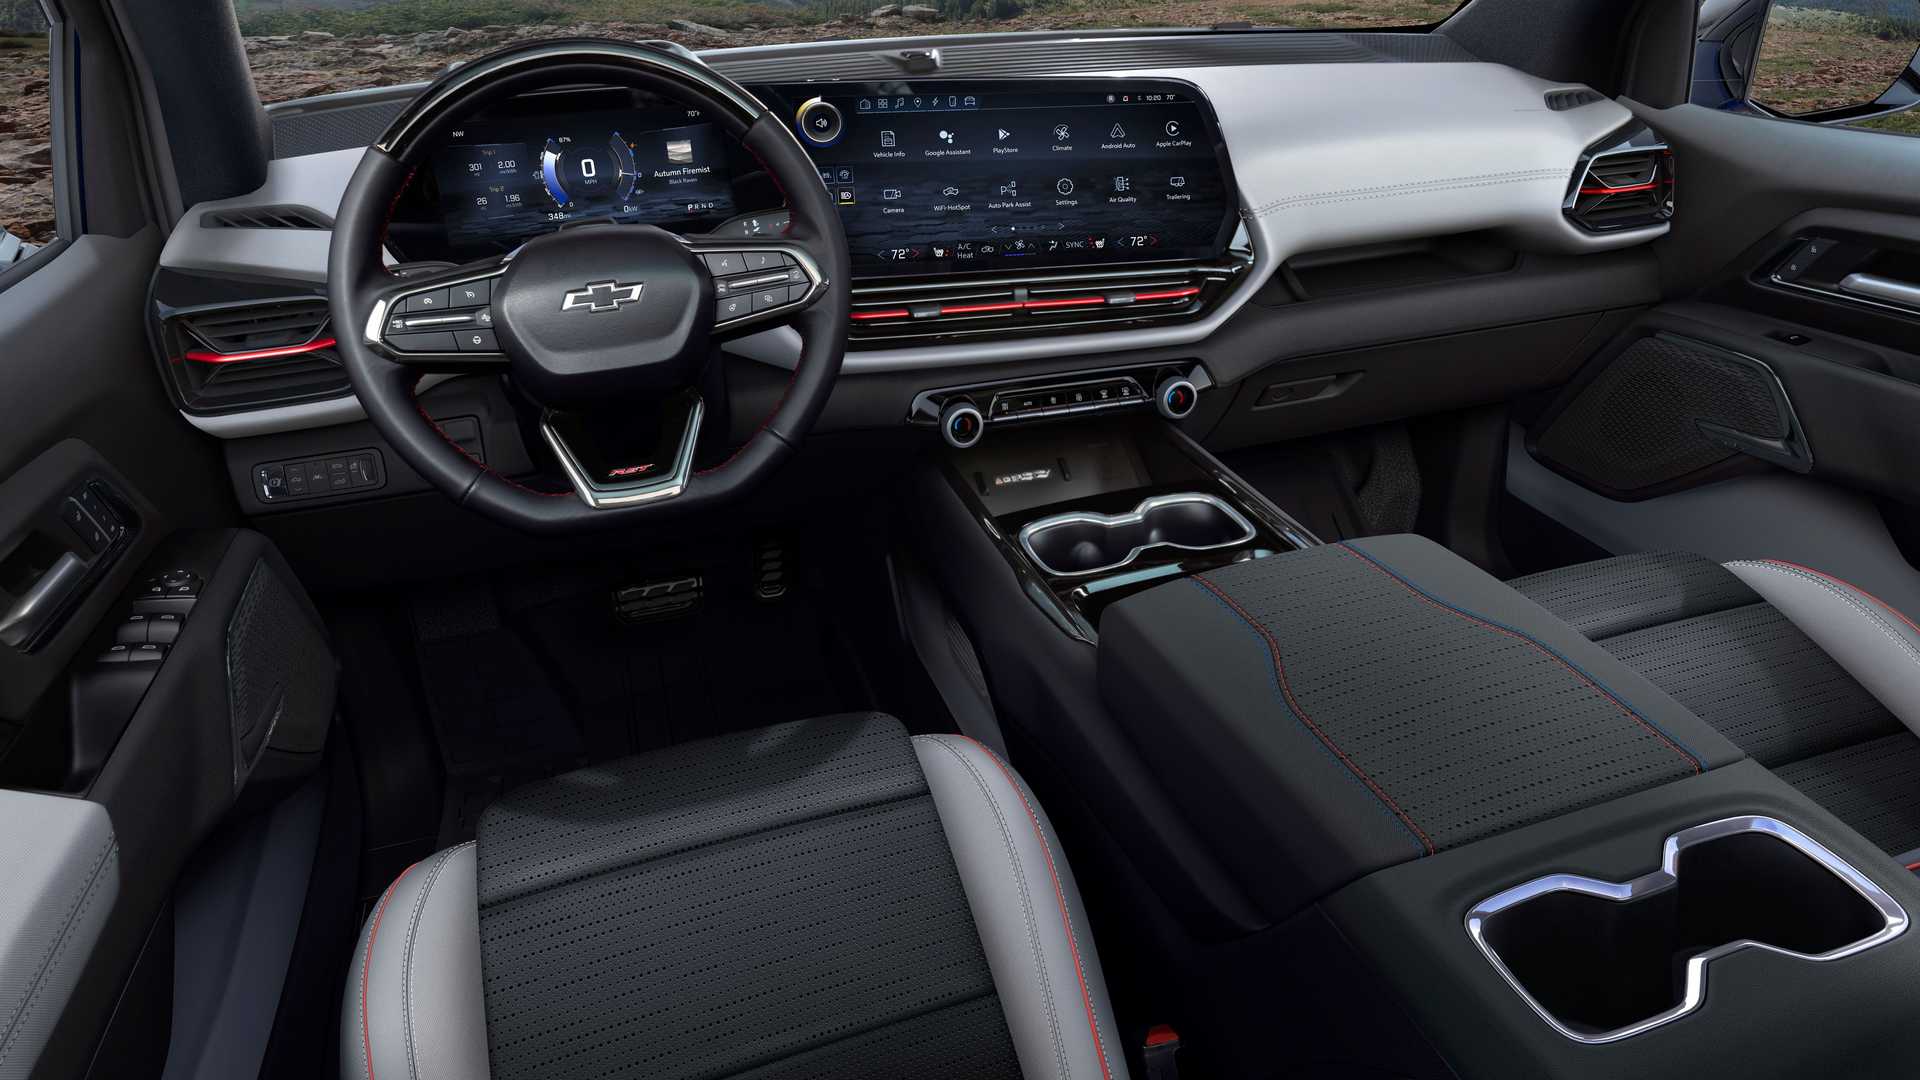 Chevrolet Silverado Ev Interior